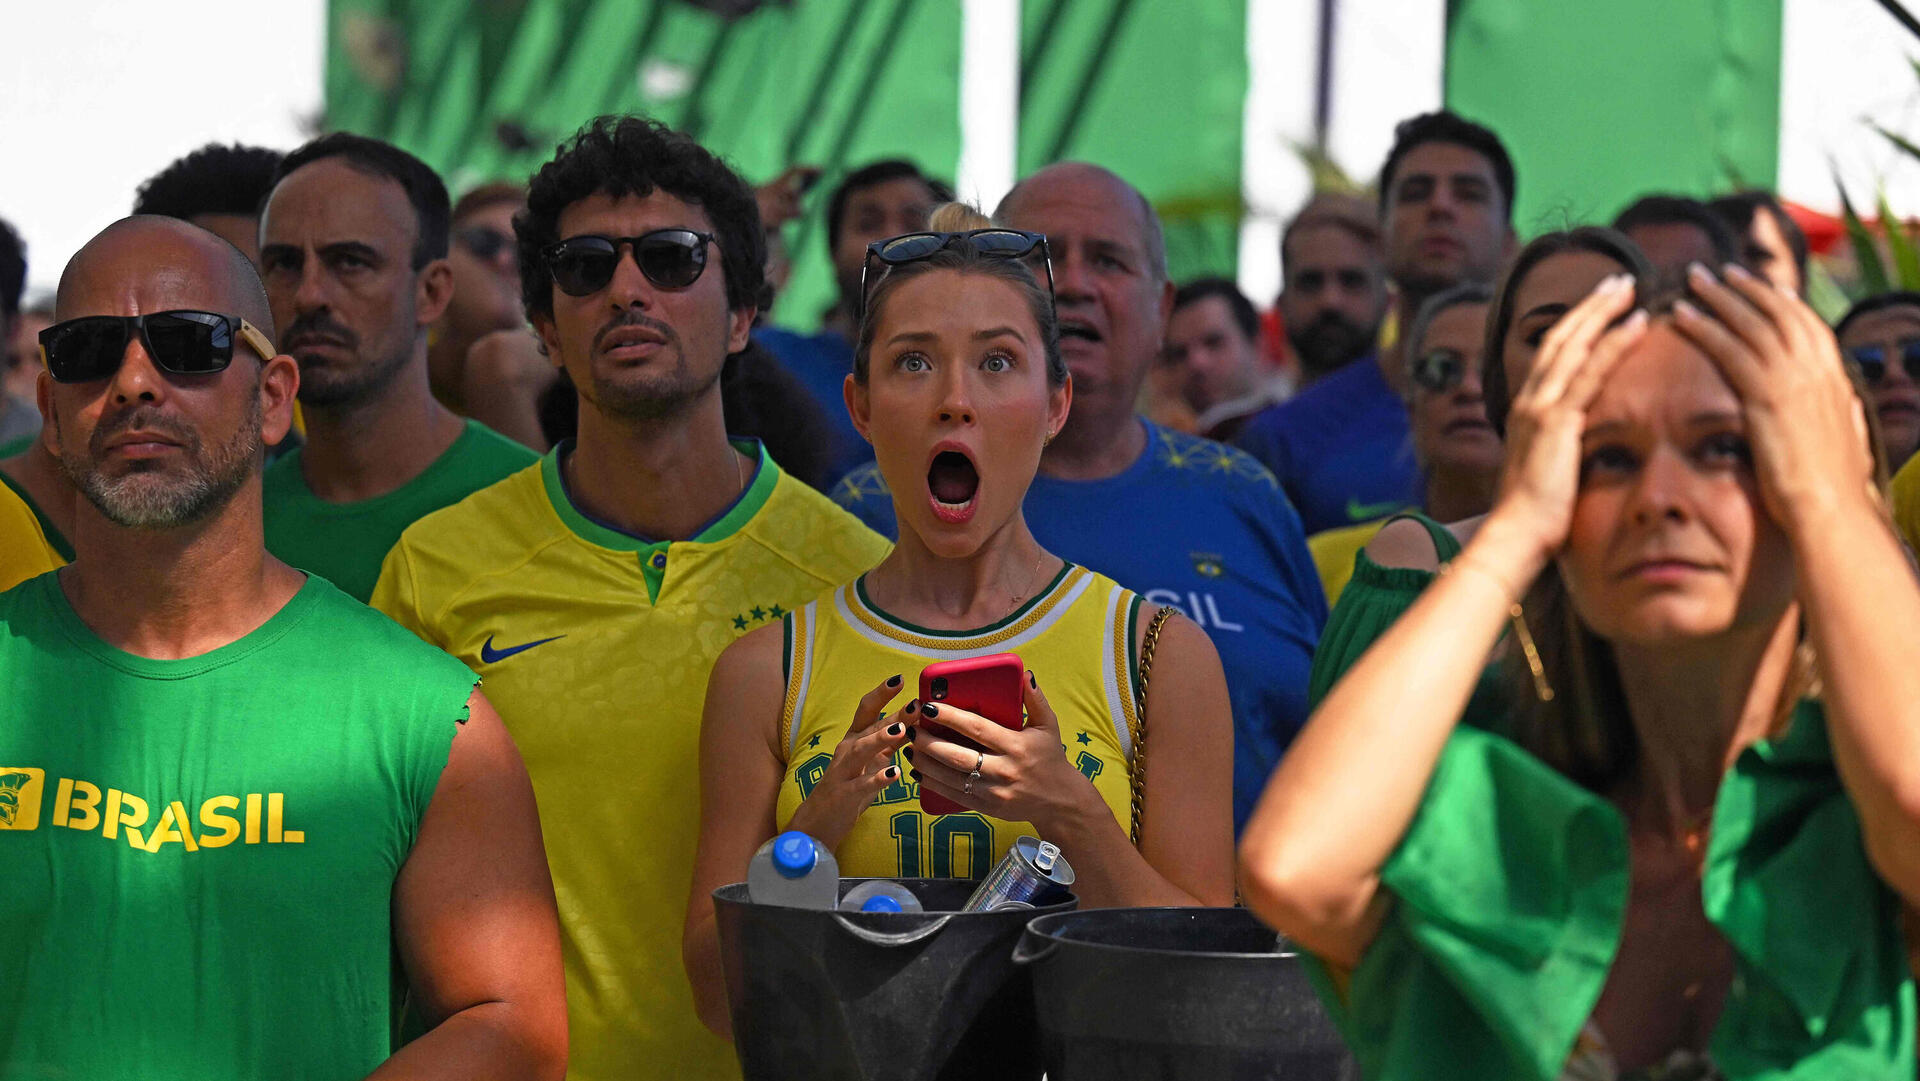 אוהדי ברזיל במשחק נגד קרואטיה מונדיאל קטאר 2022